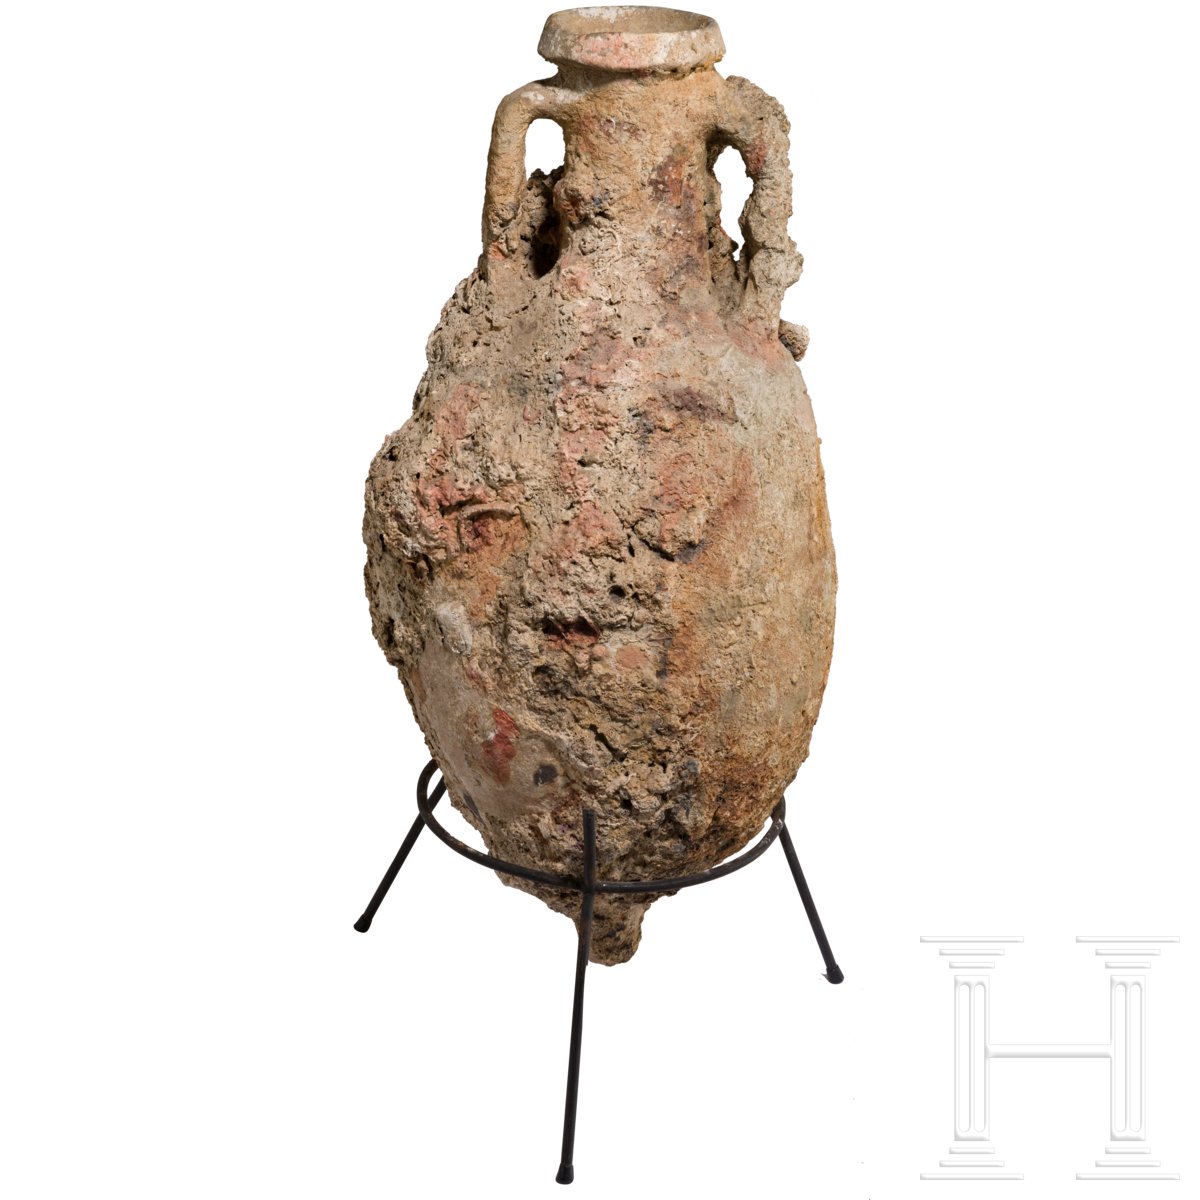 Bauchige Ölamphore, römisch, 1. Jhdt. Bauchiger Körper, mit Meeresinkrustationen überzogen. Intakt - Image 2 of 3